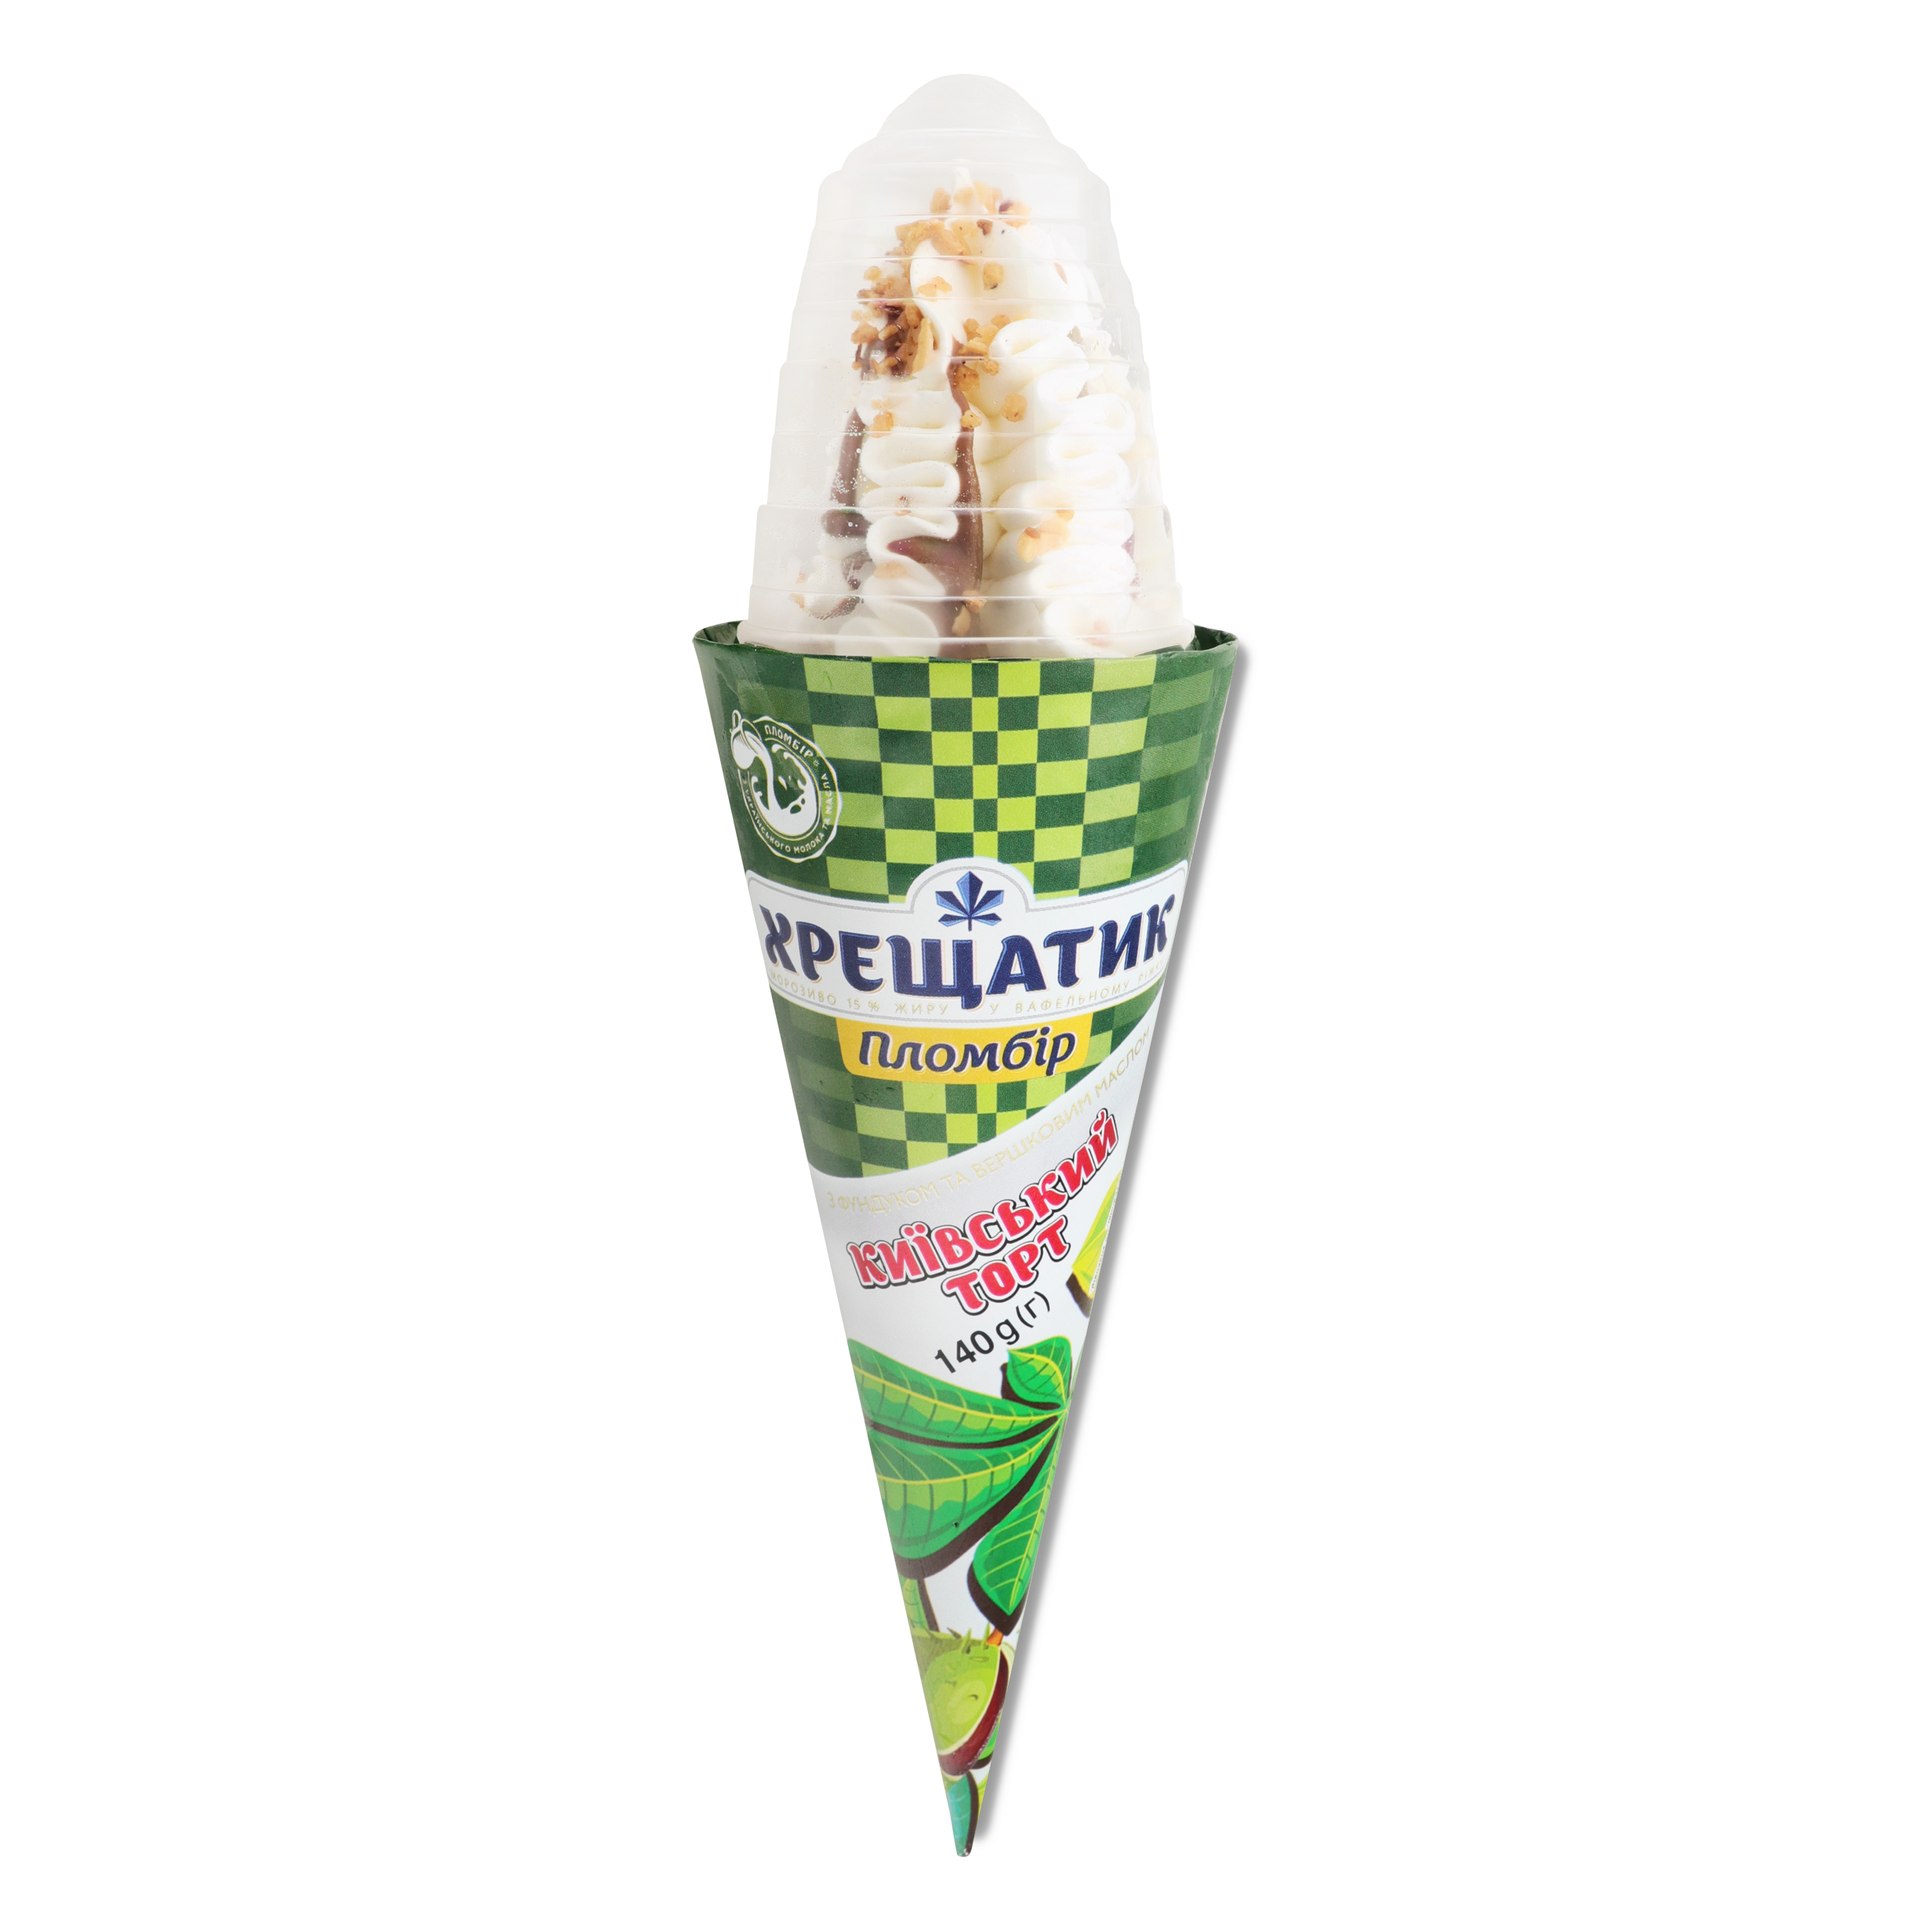 Khreschatyk Kievsky ice cream cone 140g 2